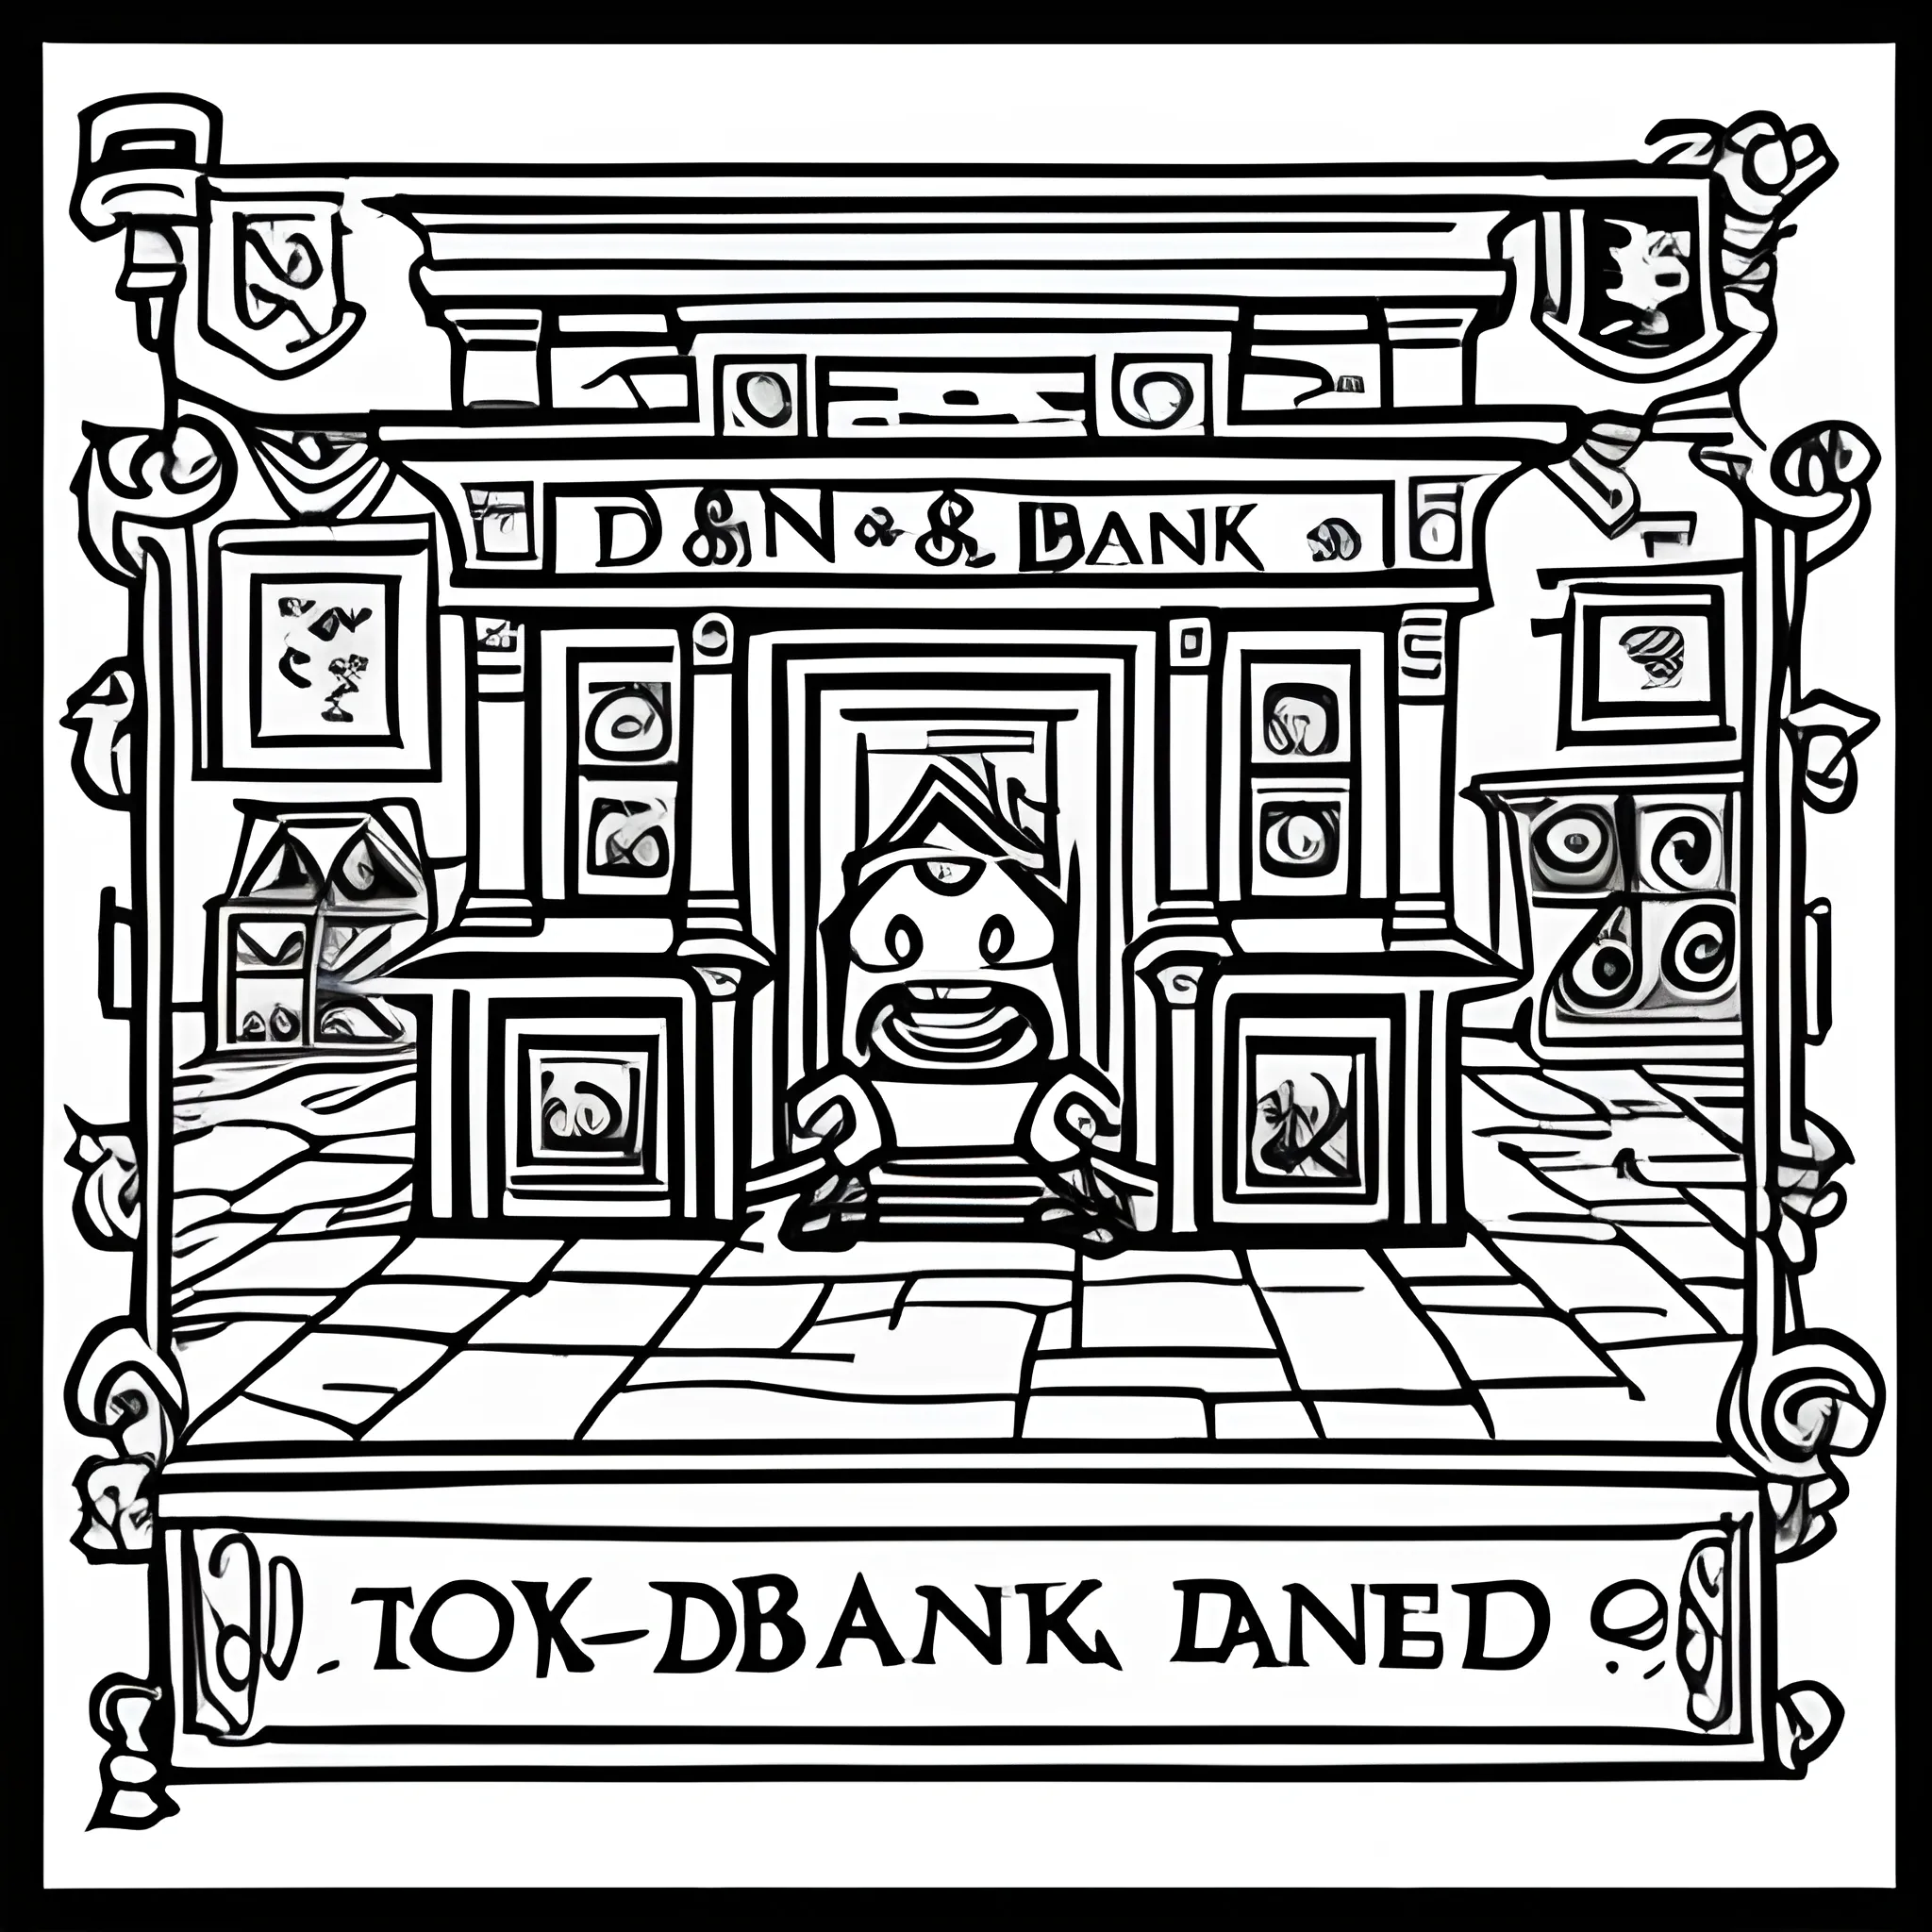 D&D Bank 
, Cartoon